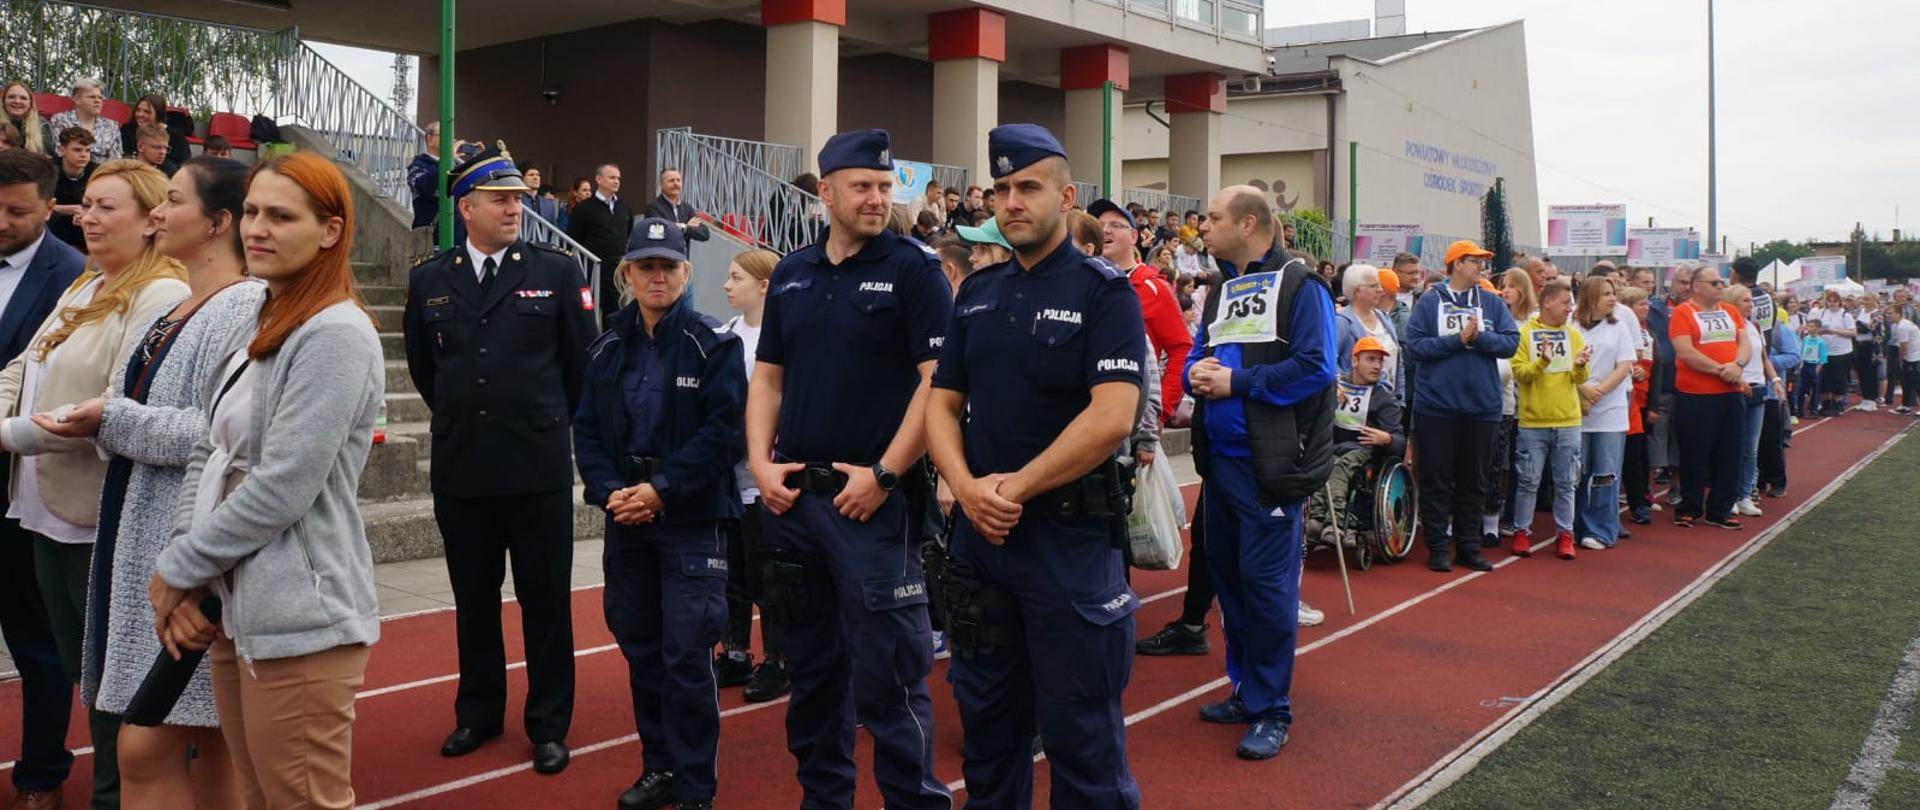 Na zdjęciu policjanci, strażak oraz zawodnicy na płycie boiska startujący w olimpiadzie